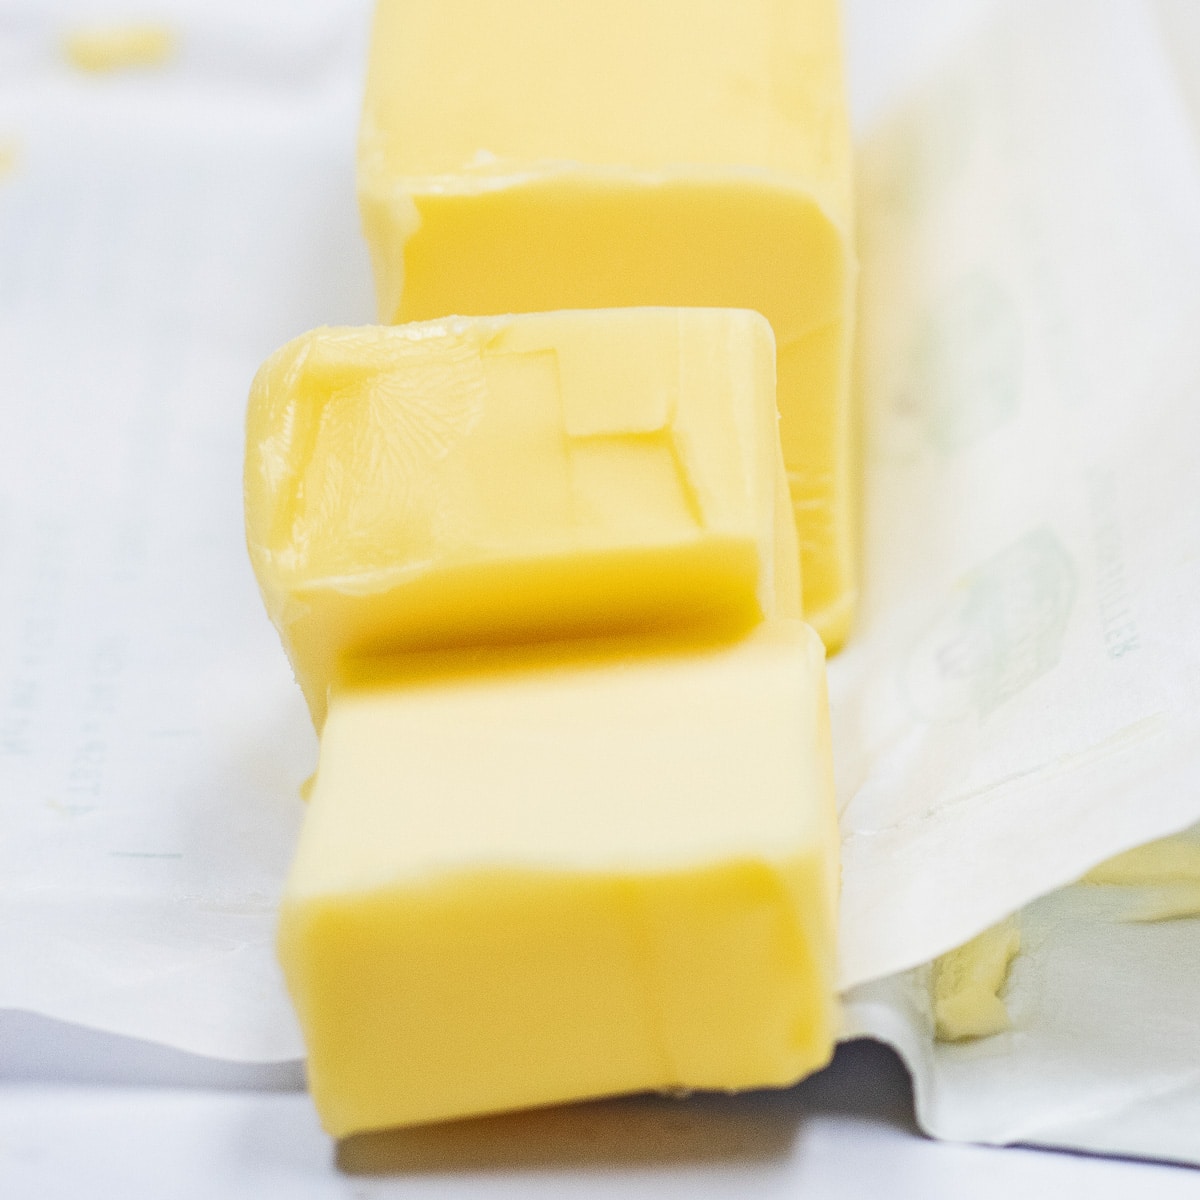 Nejlepší možnosti náhrady másla, které nahradí nakrájené evropské máslo zobrazené zde.